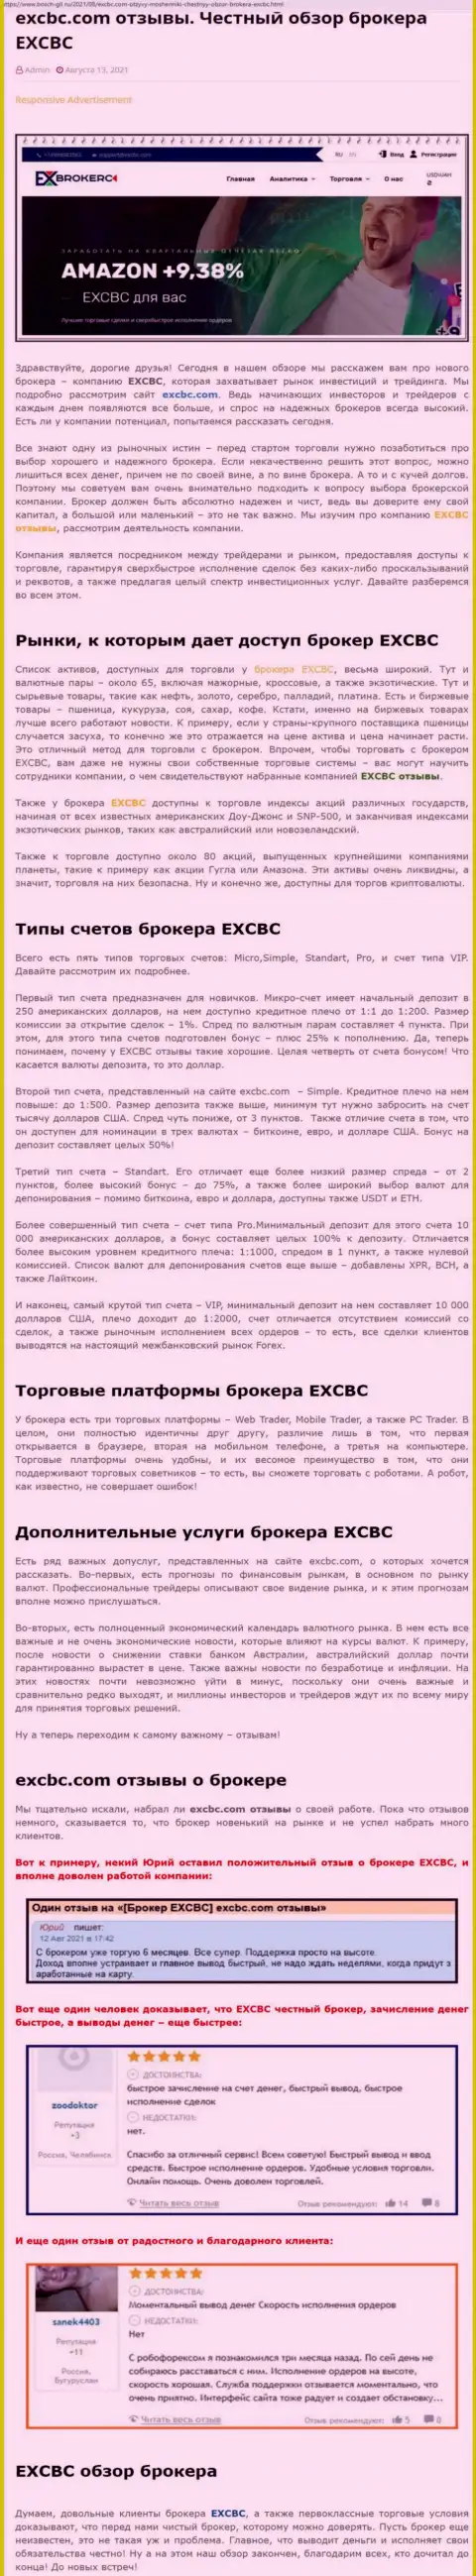 Правдивый обзор деятельности Форекс дилинговой организации ЕХ Брокерс на сайте bosch-gll ru